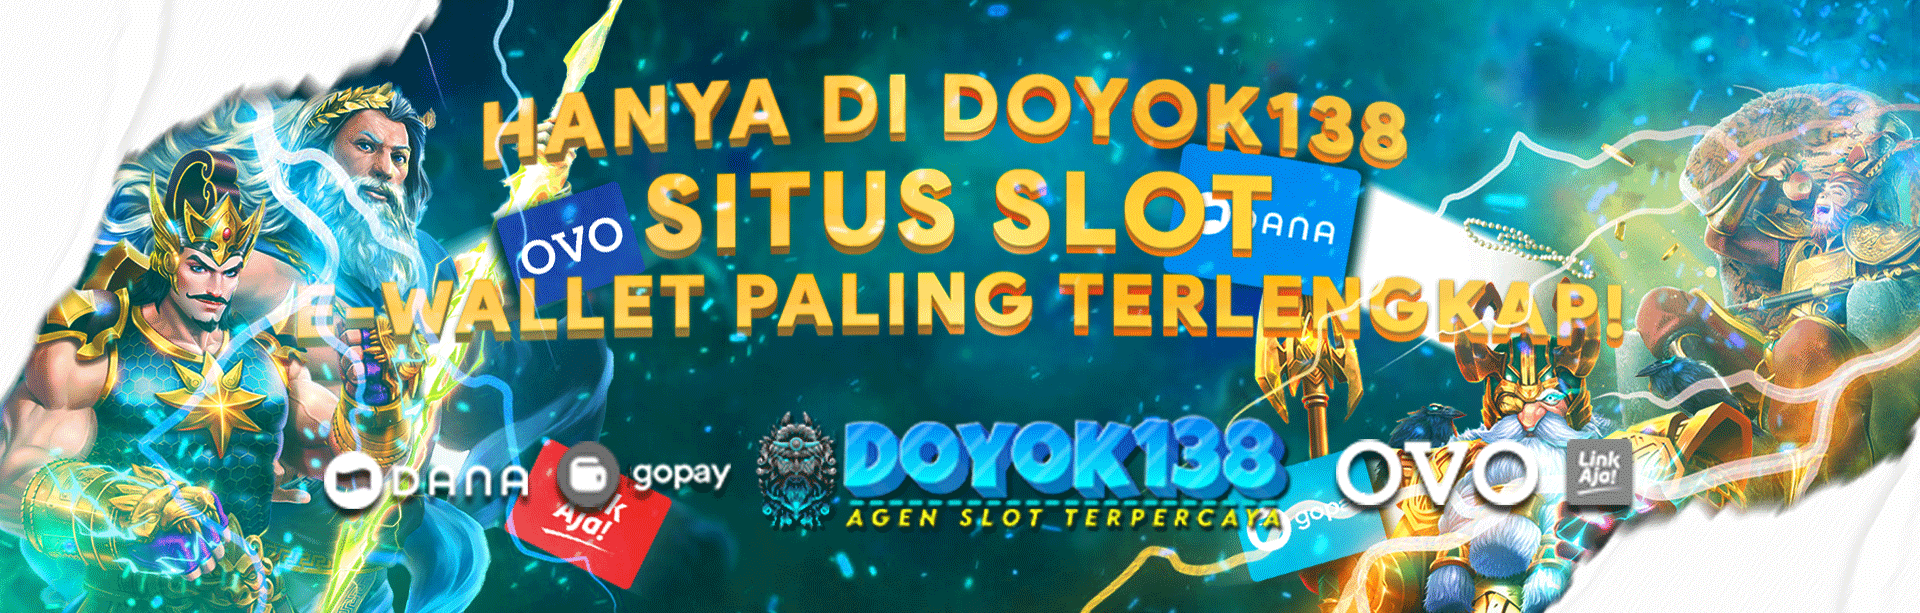 Doyok138